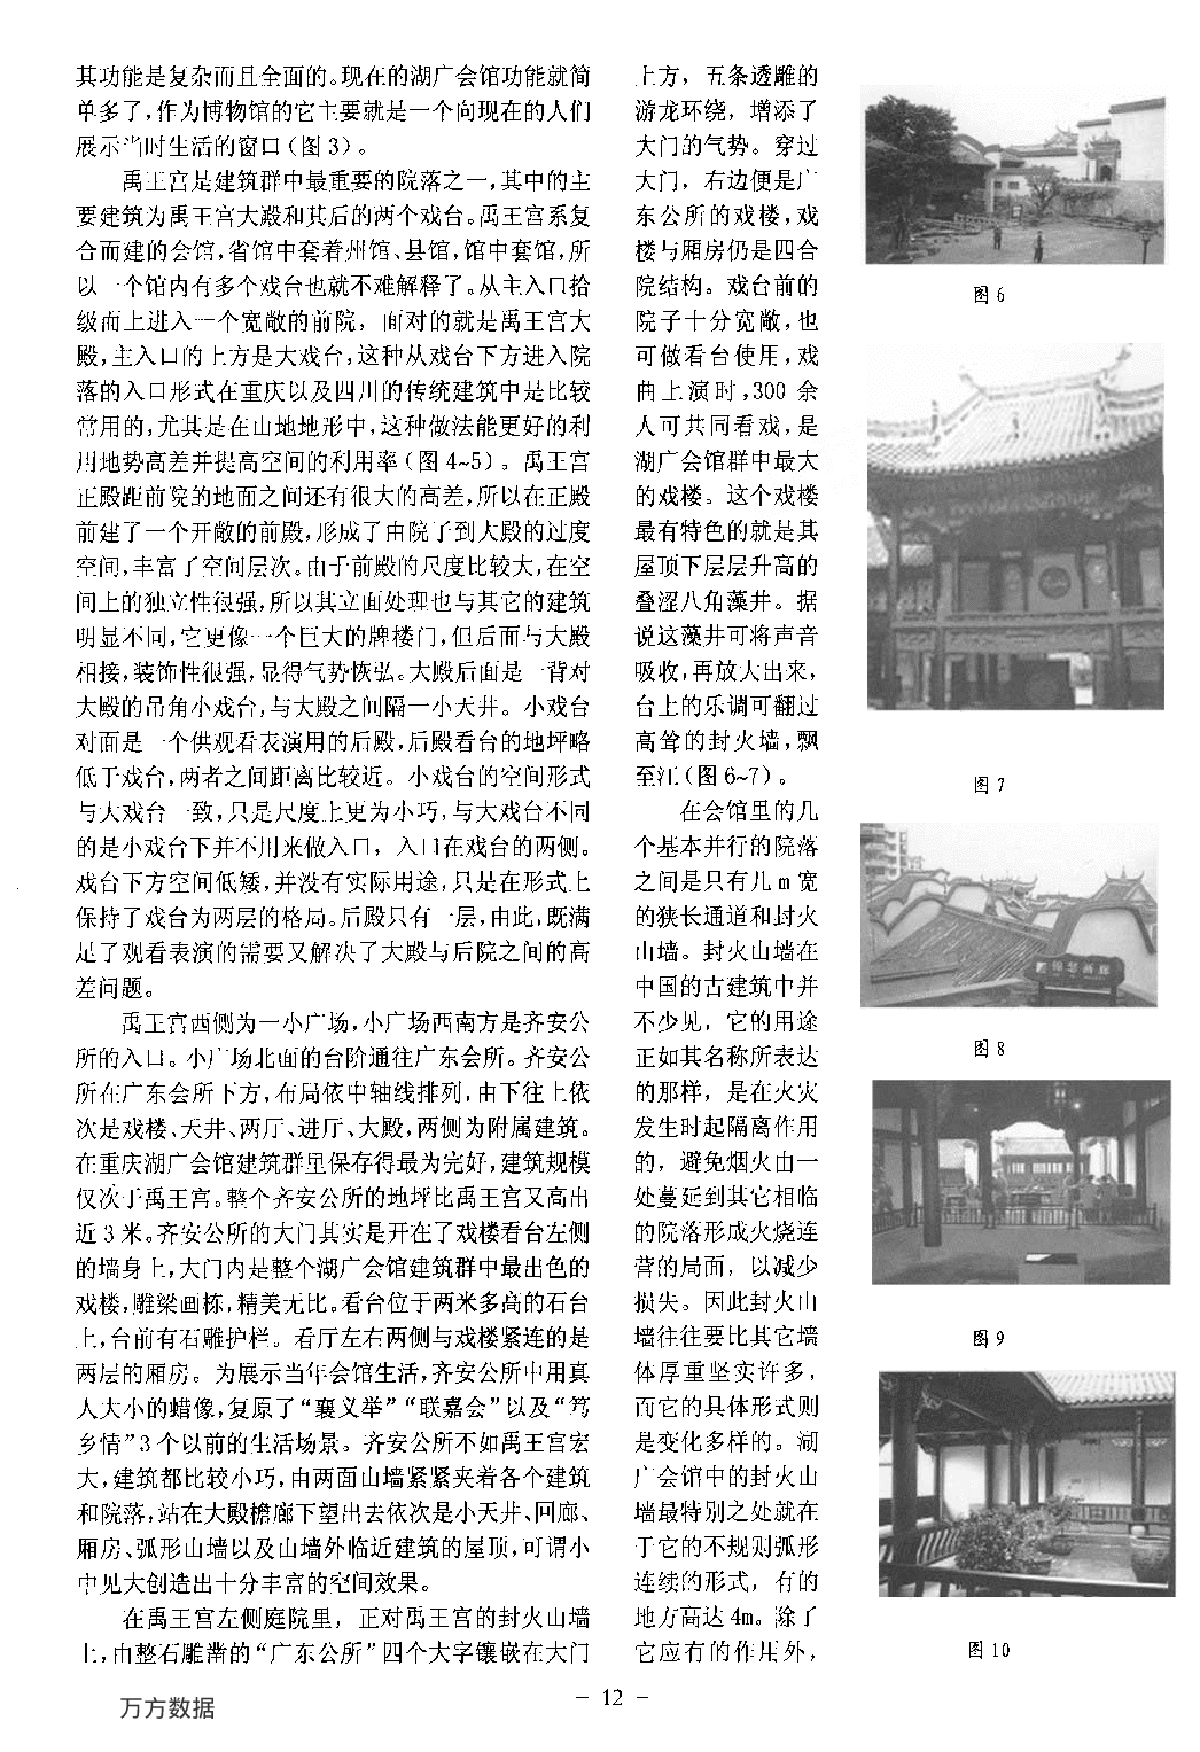 重庆湖广会馆的建筑特色分析-图二